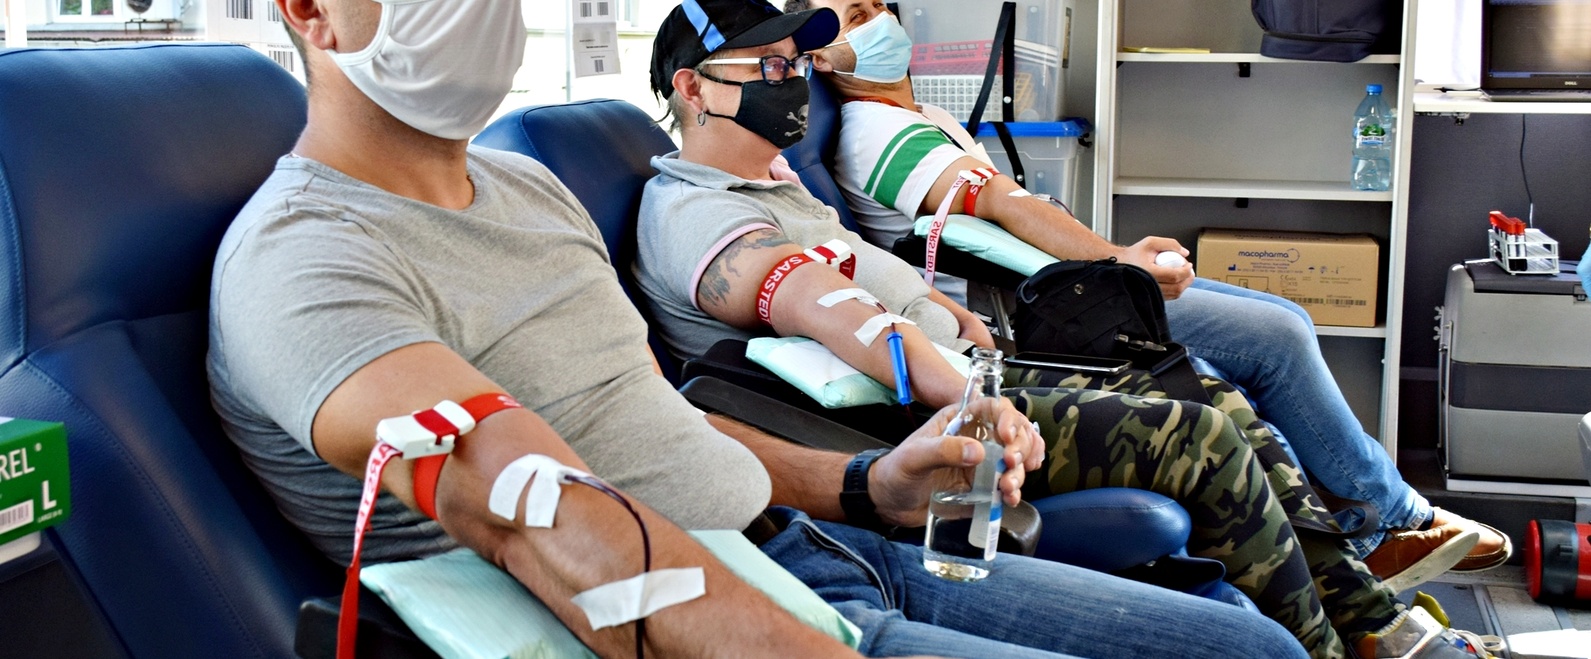 Duży sukces wakacyjnej akcji krwiodawstwa w Grupie Azoty S.A.!